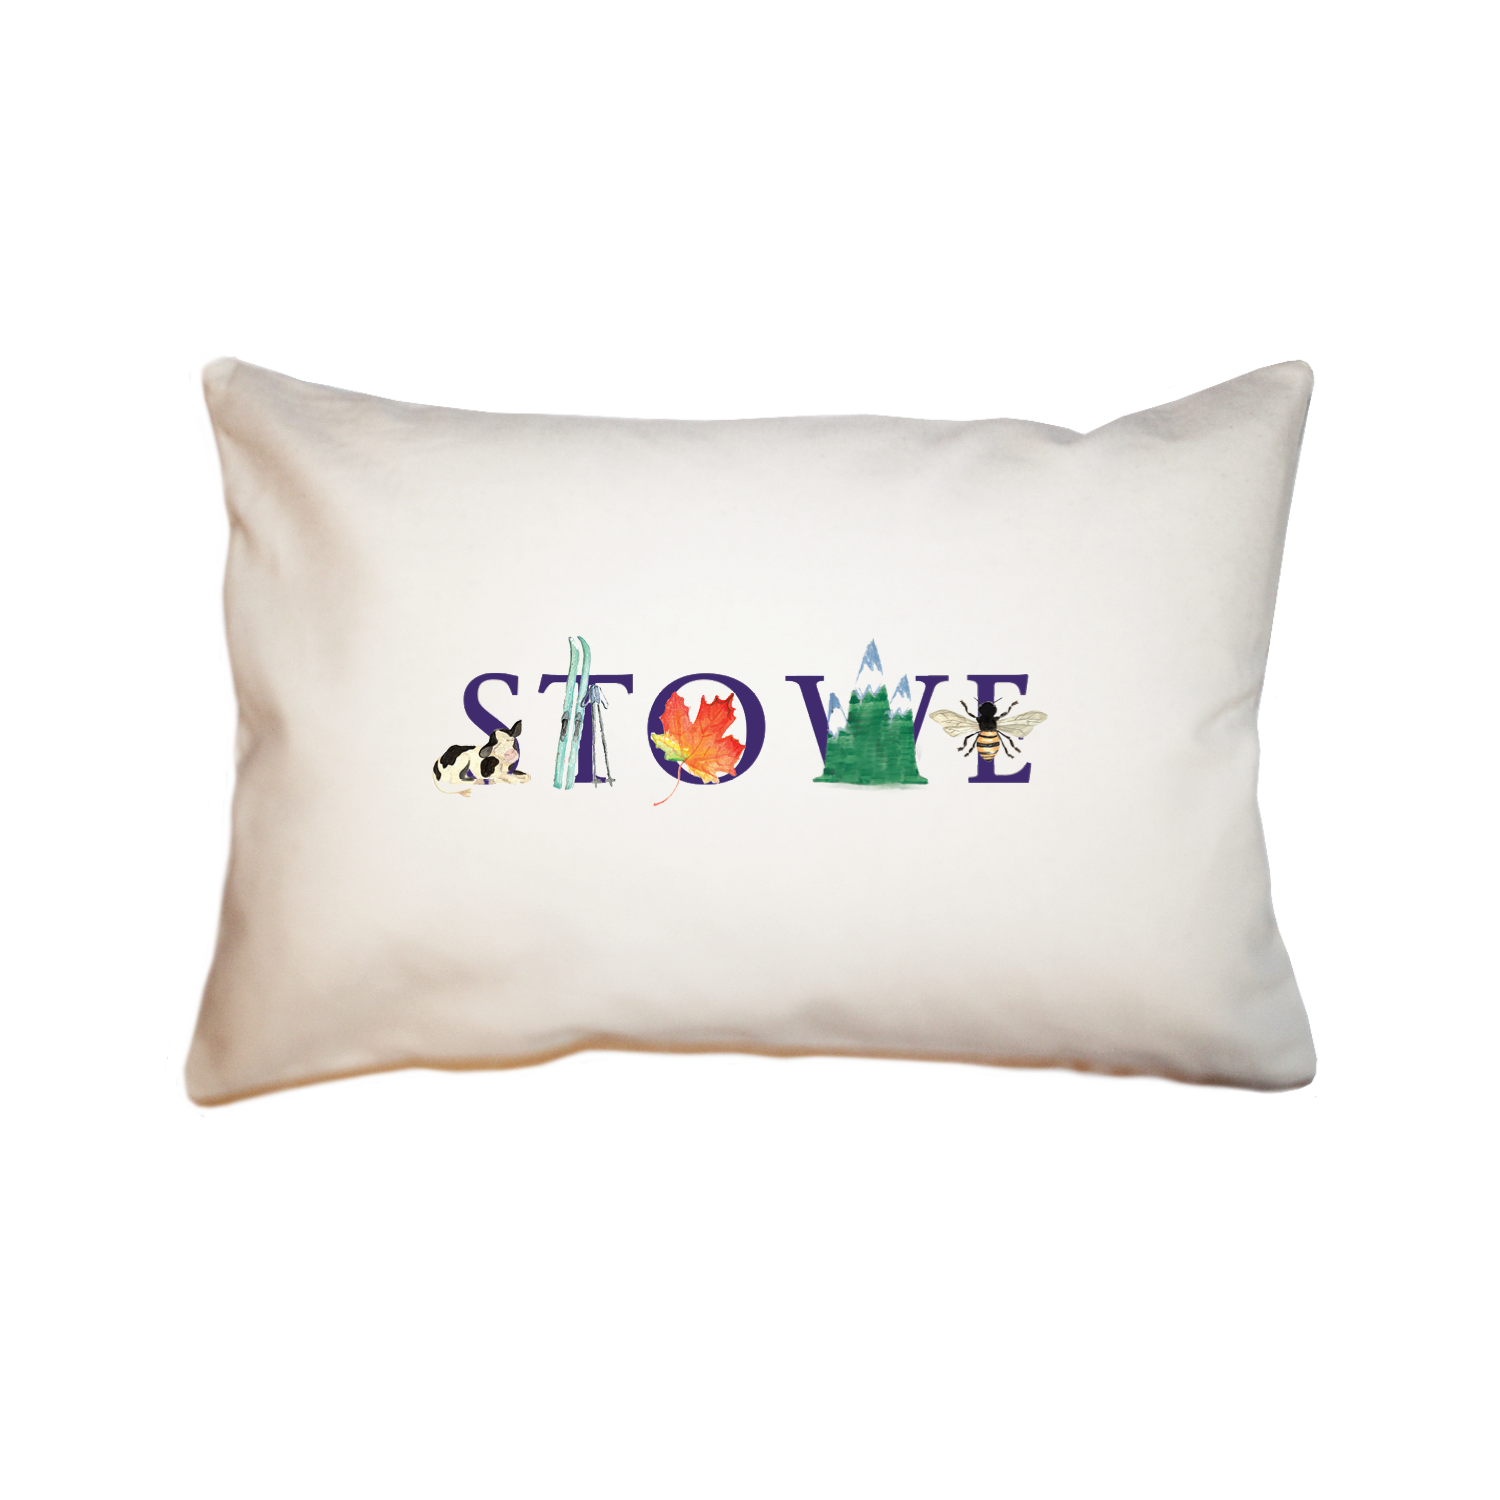 stowe, vt large rectangle pillow